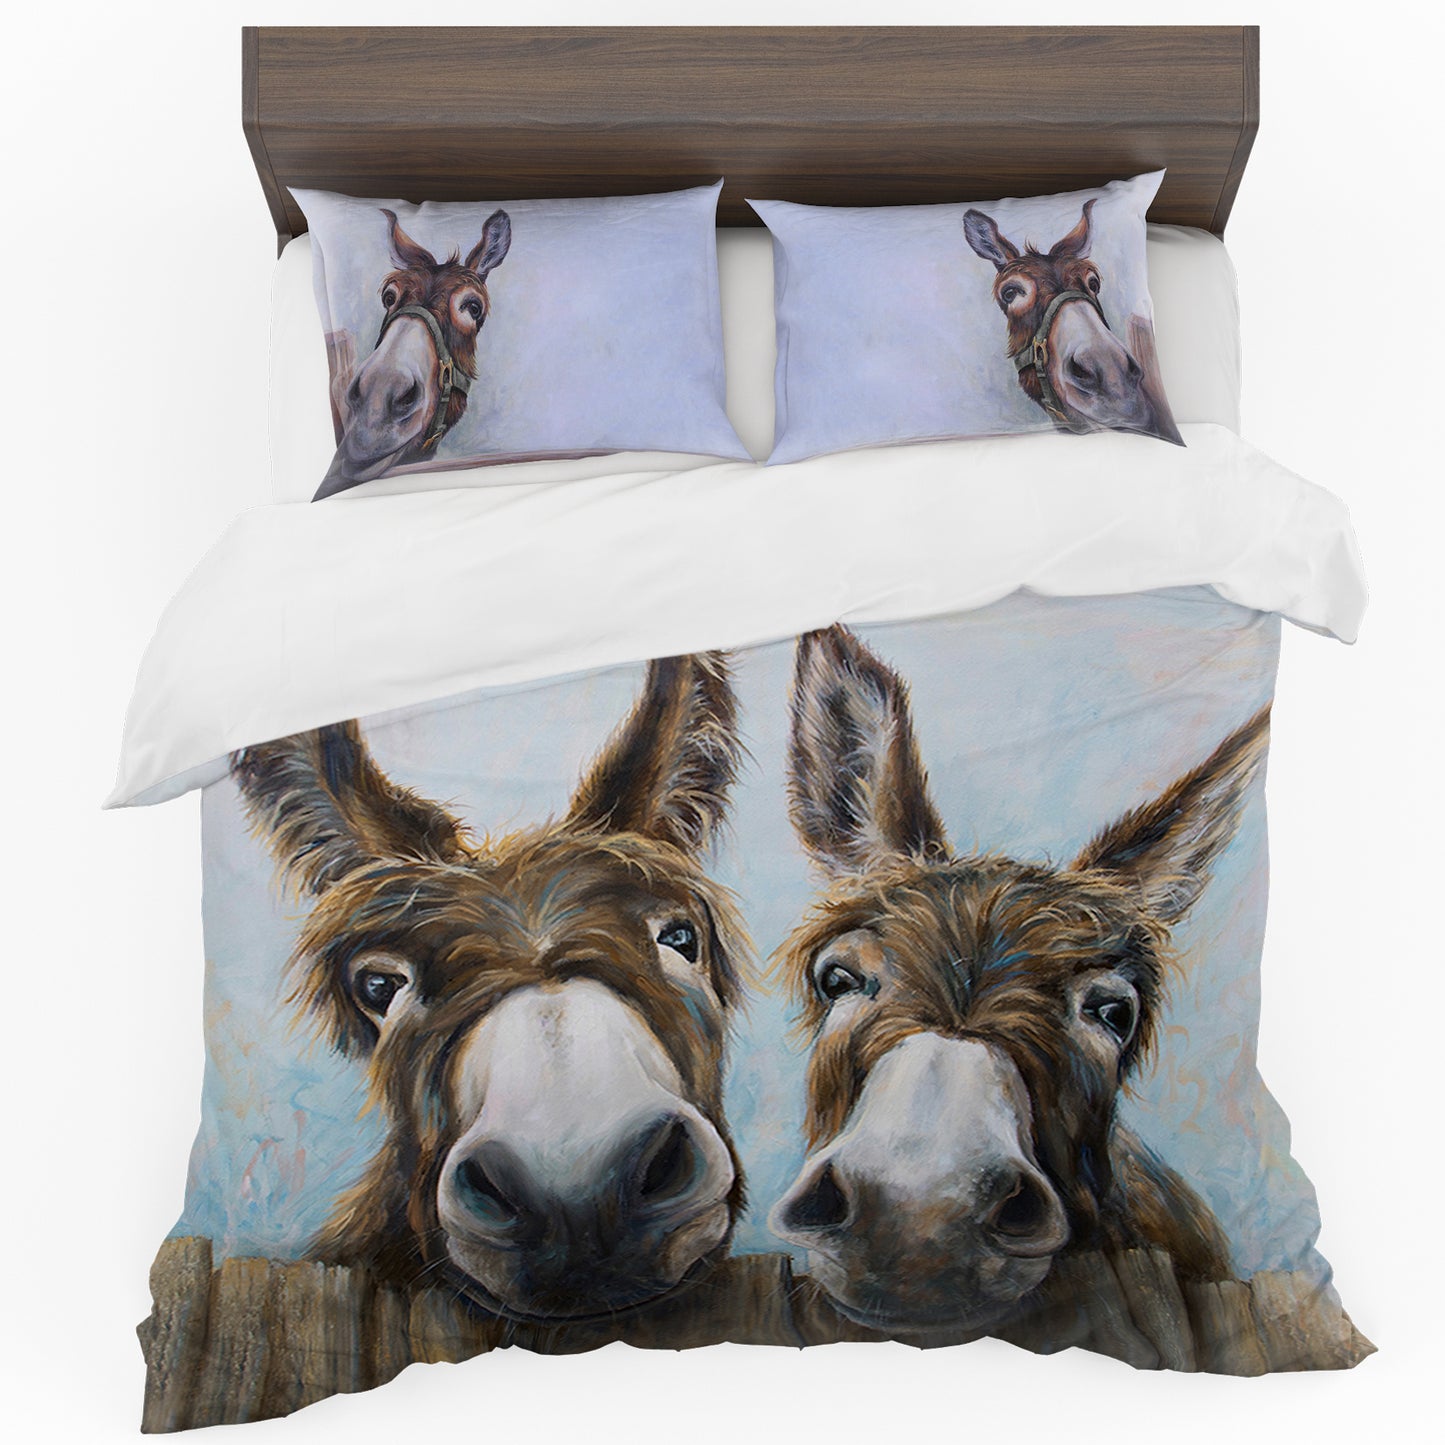 Two Donkeys Duvet Cover Set